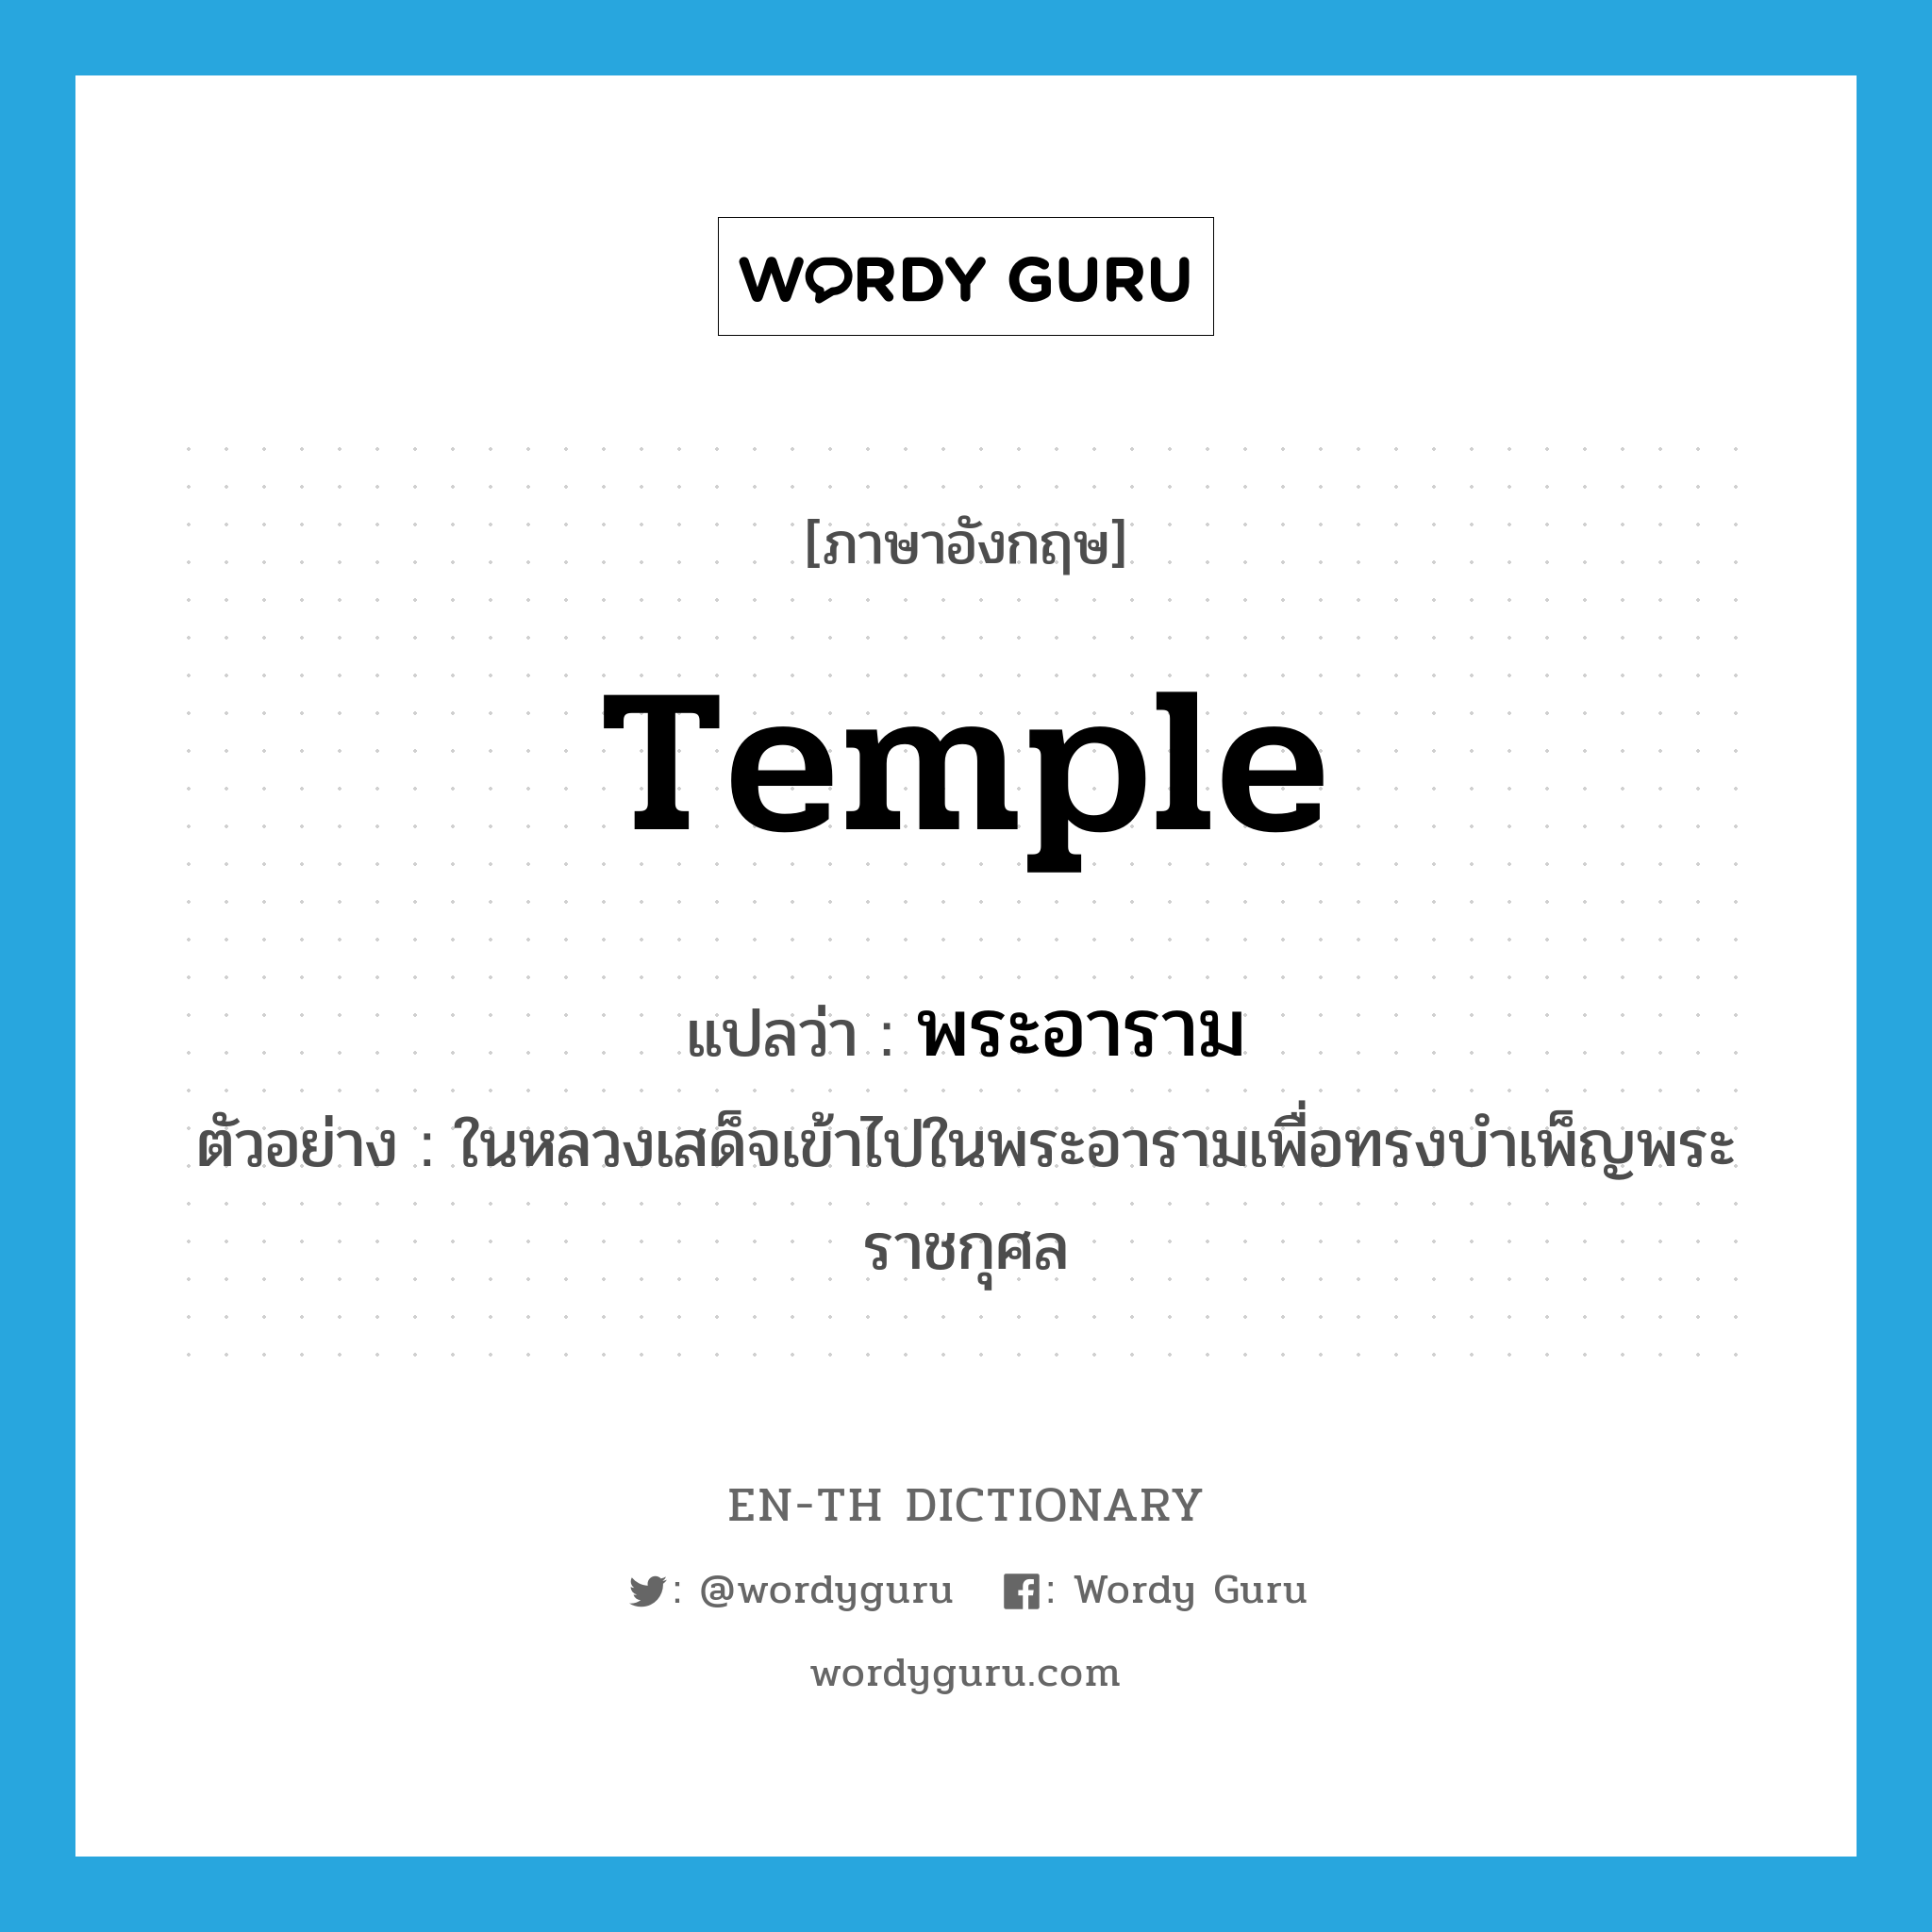 temple แปลว่า?, คำศัพท์ภาษาอังกฤษ temple แปลว่า พระอาราม ประเภท N ตัวอย่าง ในหลวงเสด็จเข้าไปในพระอารามเพื่อทรงบำเพ็ญพระราชกุศล หมวด N